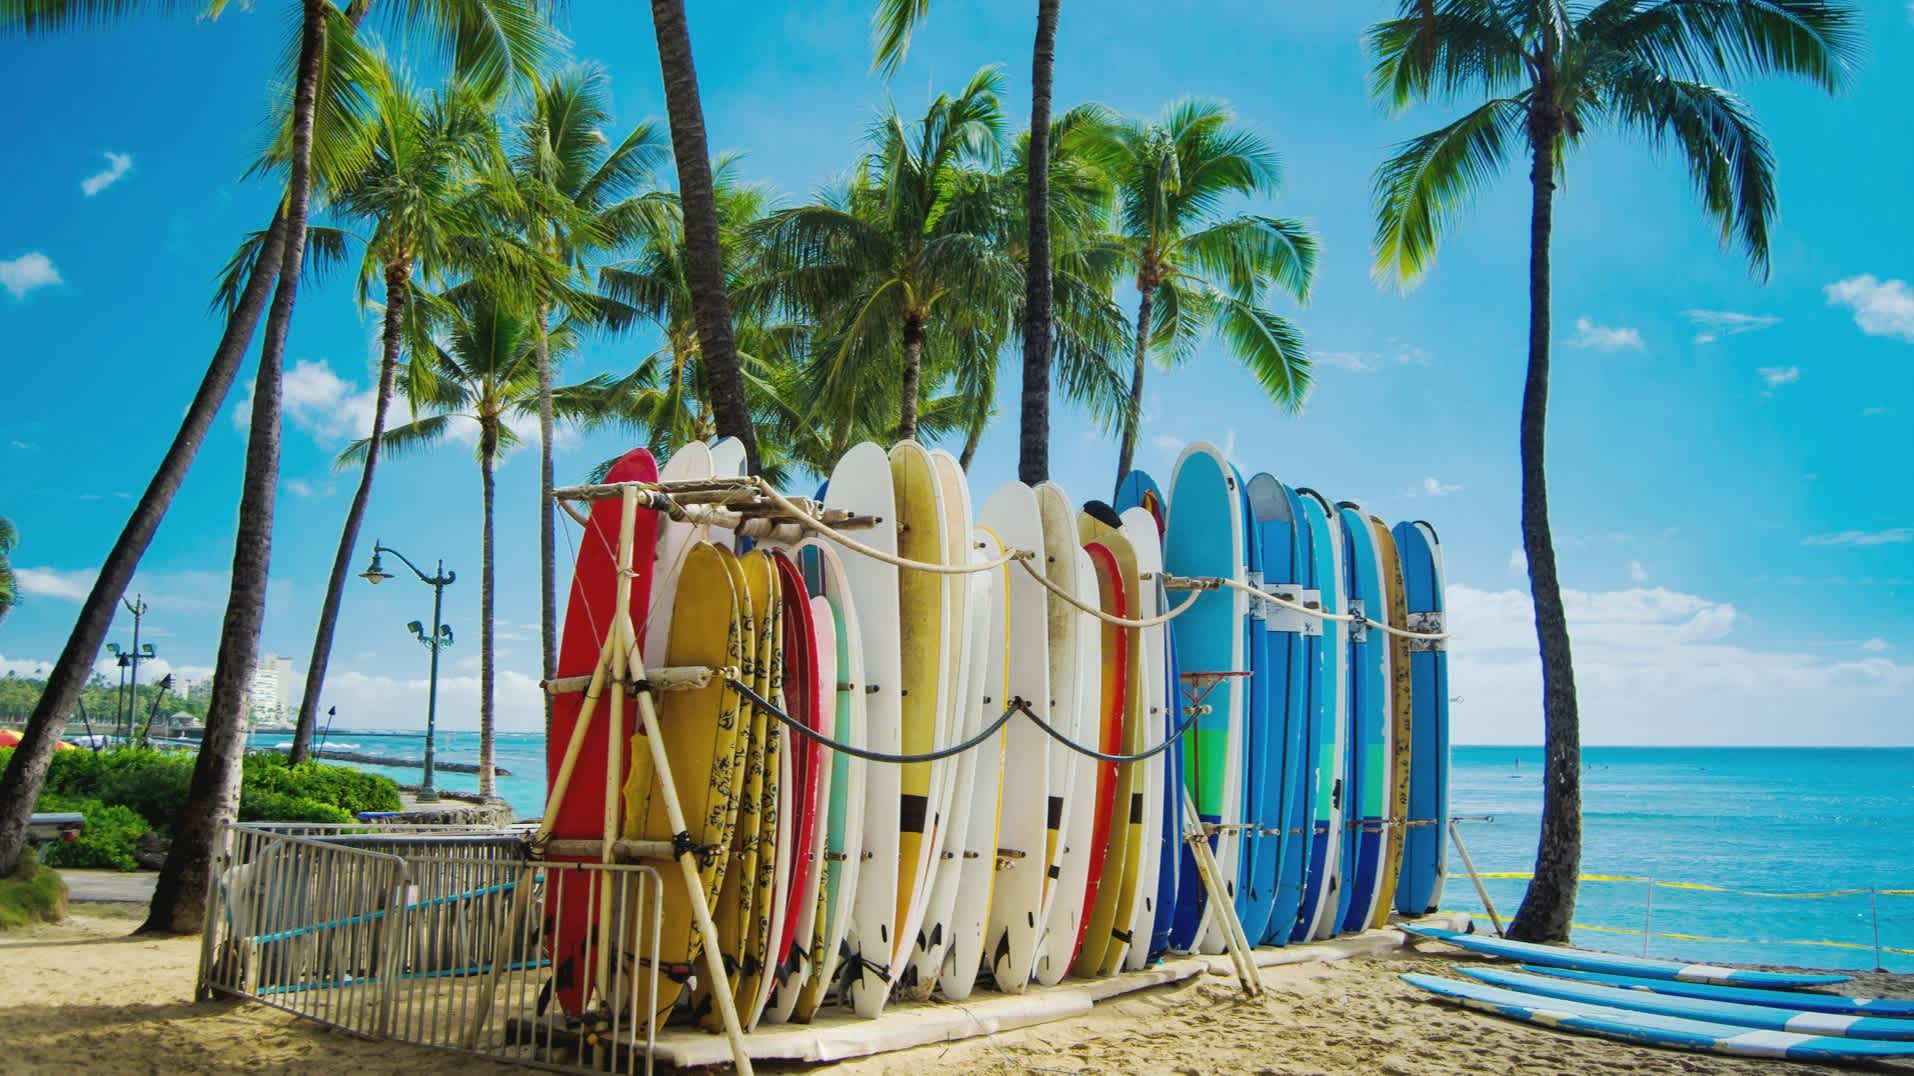 Palmiers et planches de surf colorées sur la plage de Waikiki, Oahu, Hawaï